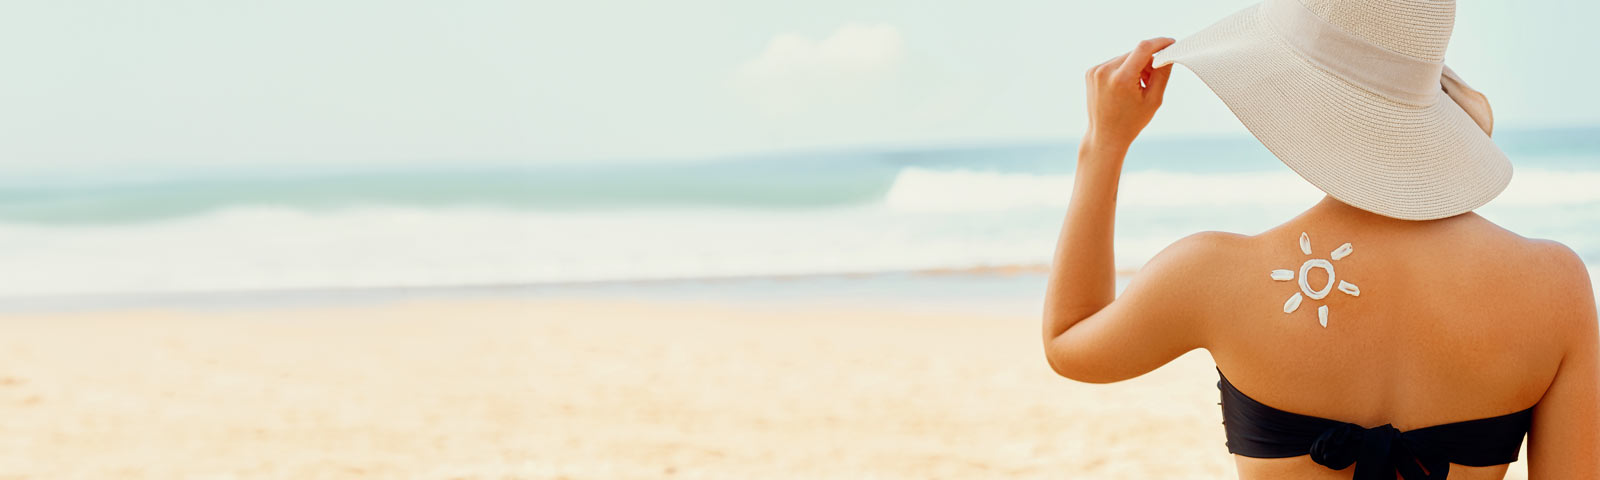 Eine Frau steht am Strand, genießt die Sonne und trägt zum Schutz vor der Sonnen einen großen Hut.